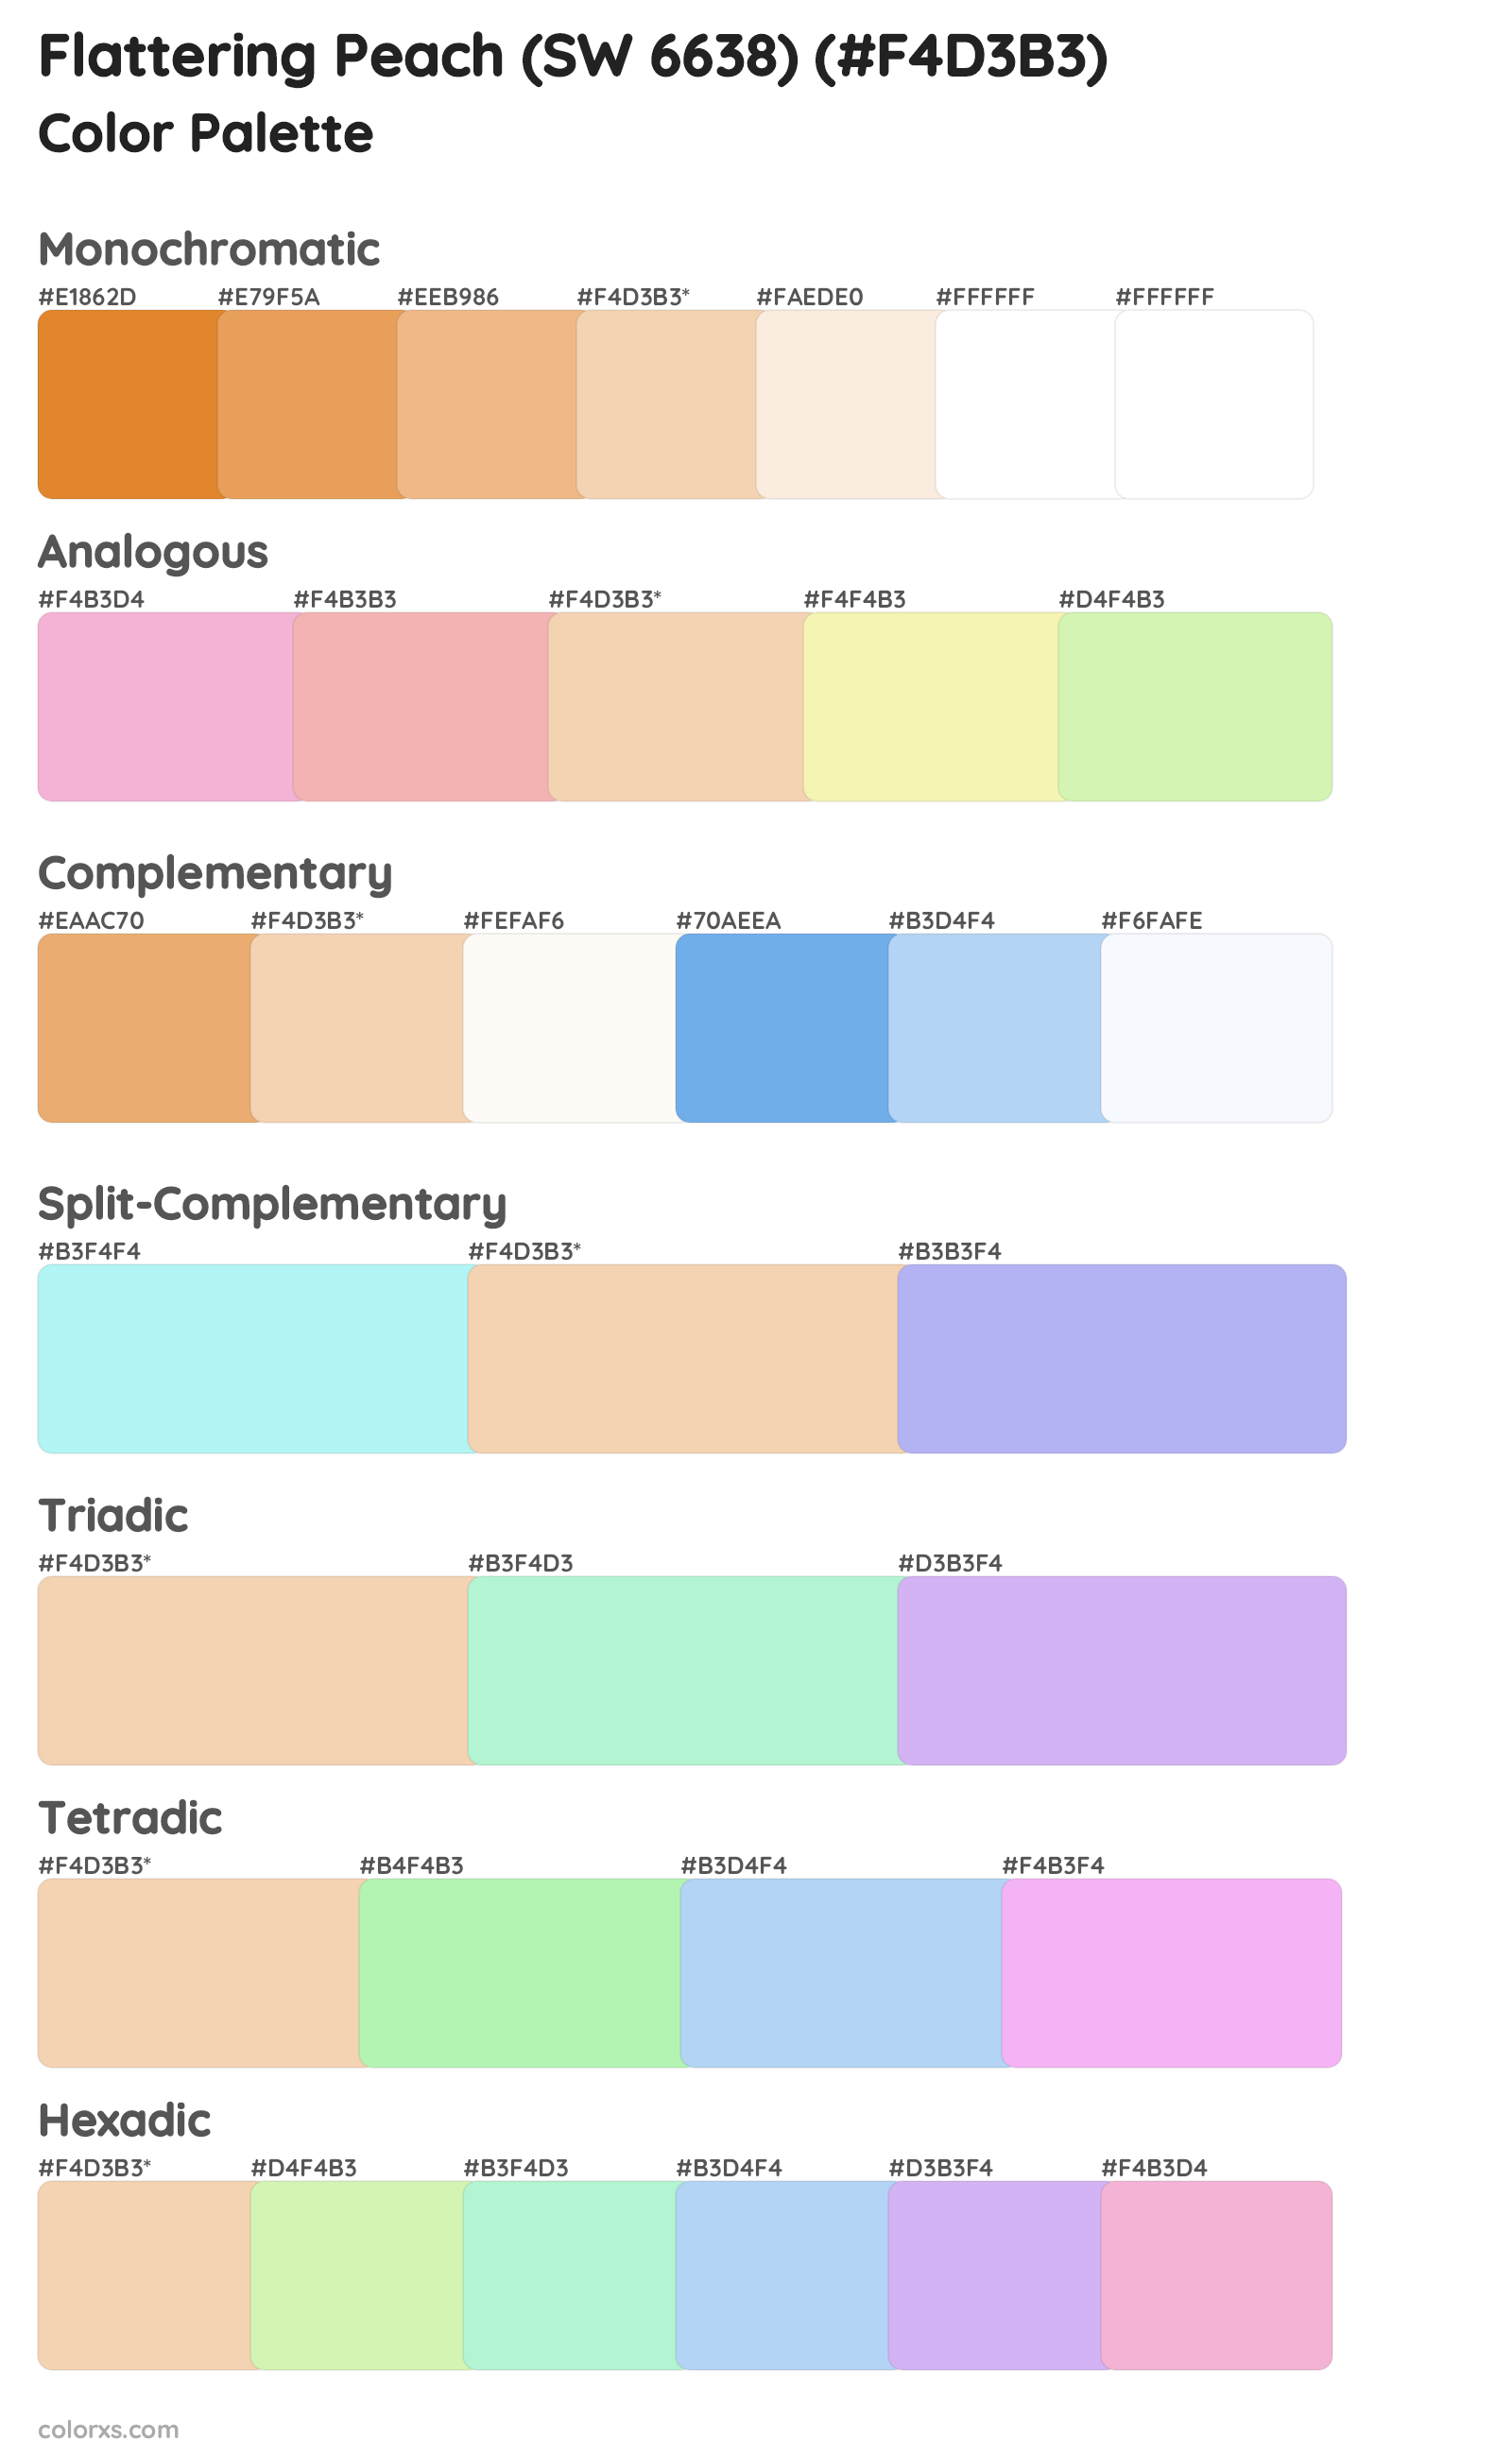 Flattering Peach (SW 6638) Color Scheme Palettes